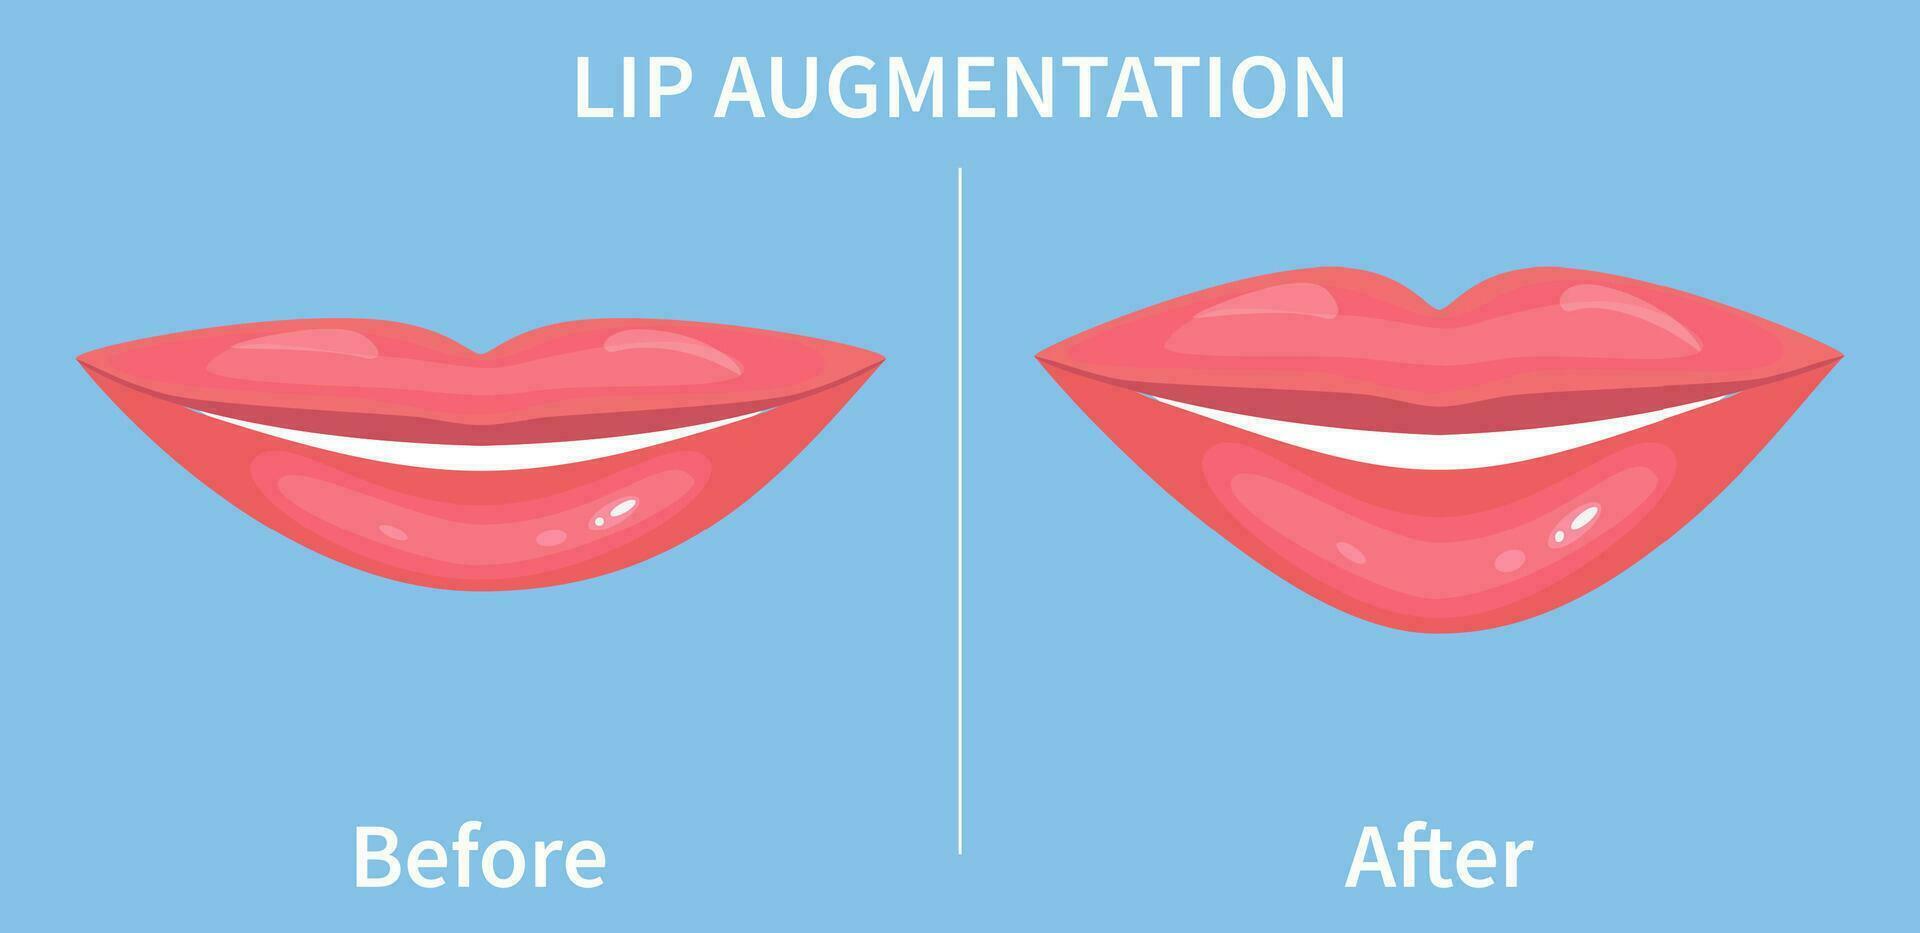 Lippe Augmentation. Vor und nach Lippe Füllstoff Injektionen. hyaluronic Acid Injektionen. Vektor Illustration im eben Stil